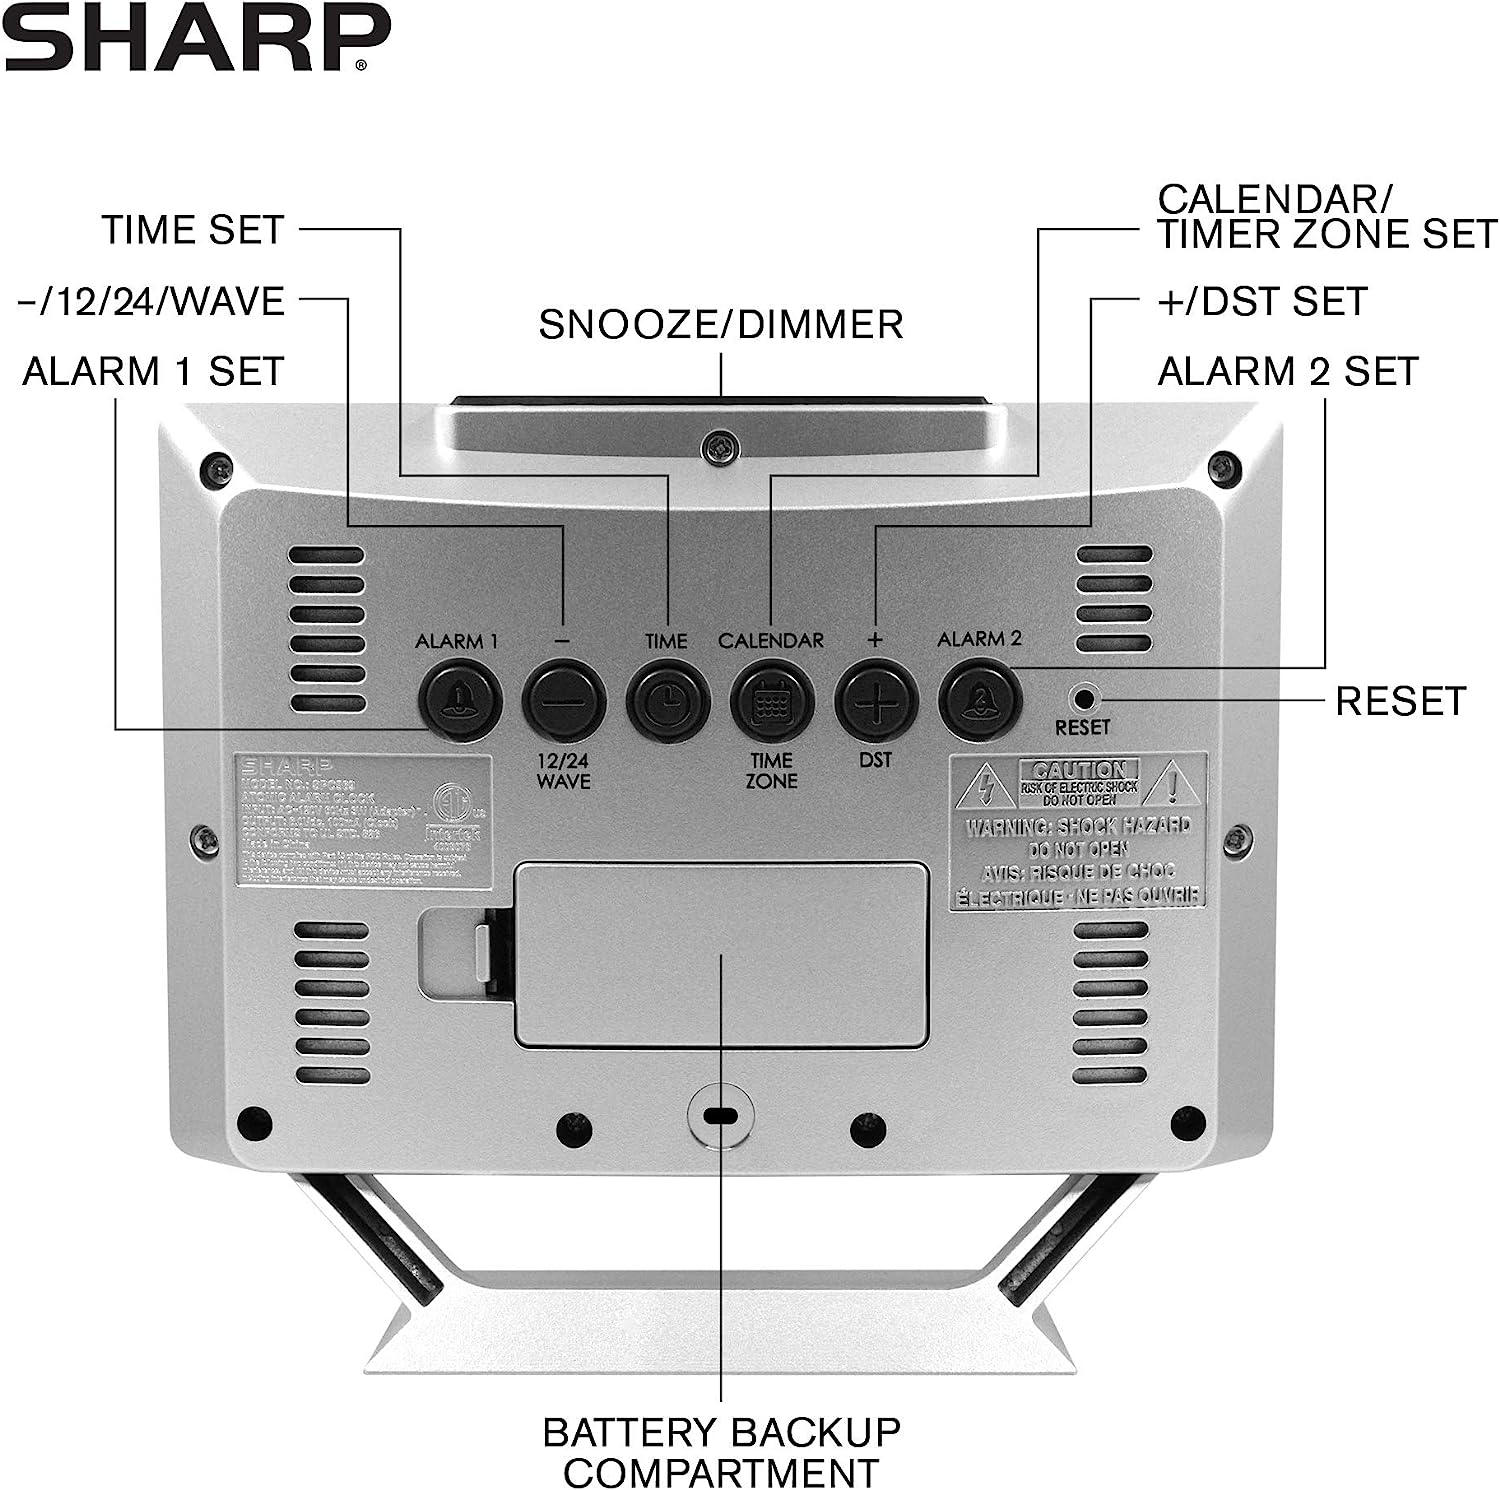 ساعت دیجیتال رومیزی مدل Sharp Atomic Desktop - ارسال 10 الی 15 روز کاری